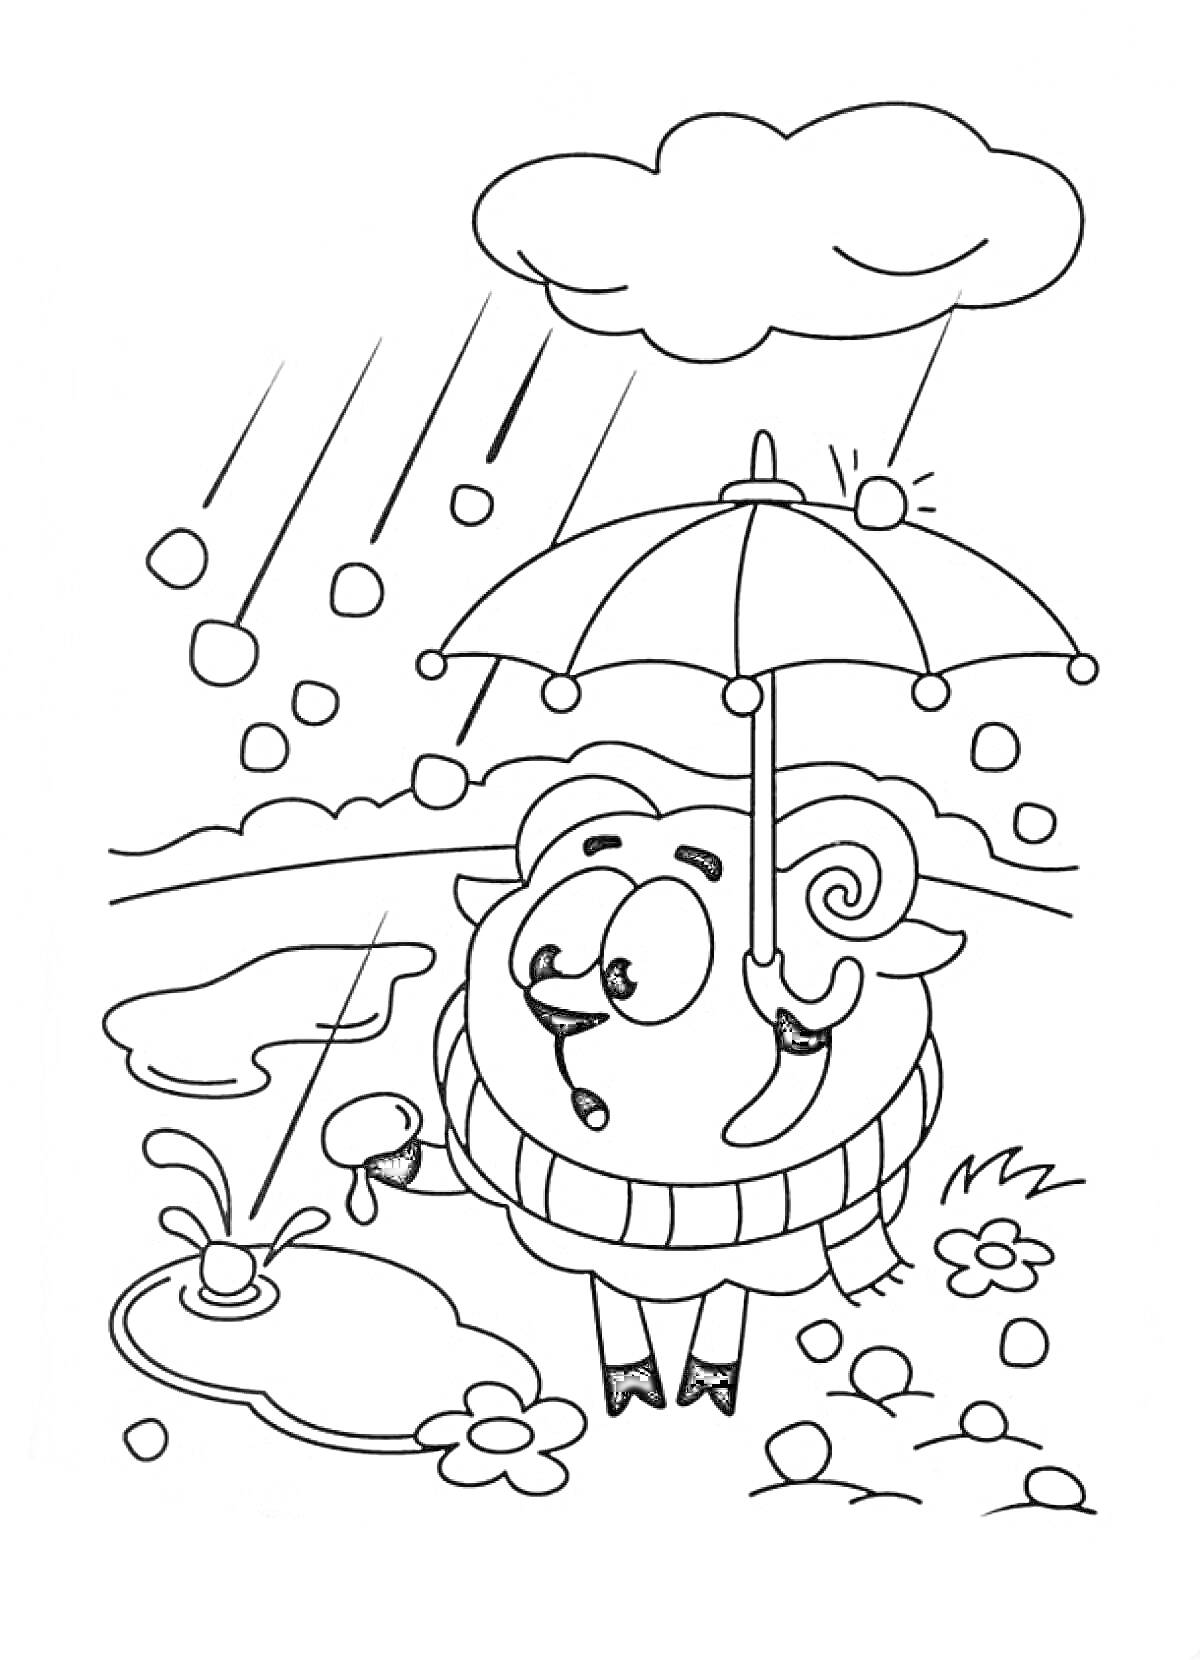 Бараш со смешариками под дождём, с зонтиком, лужей и цветами